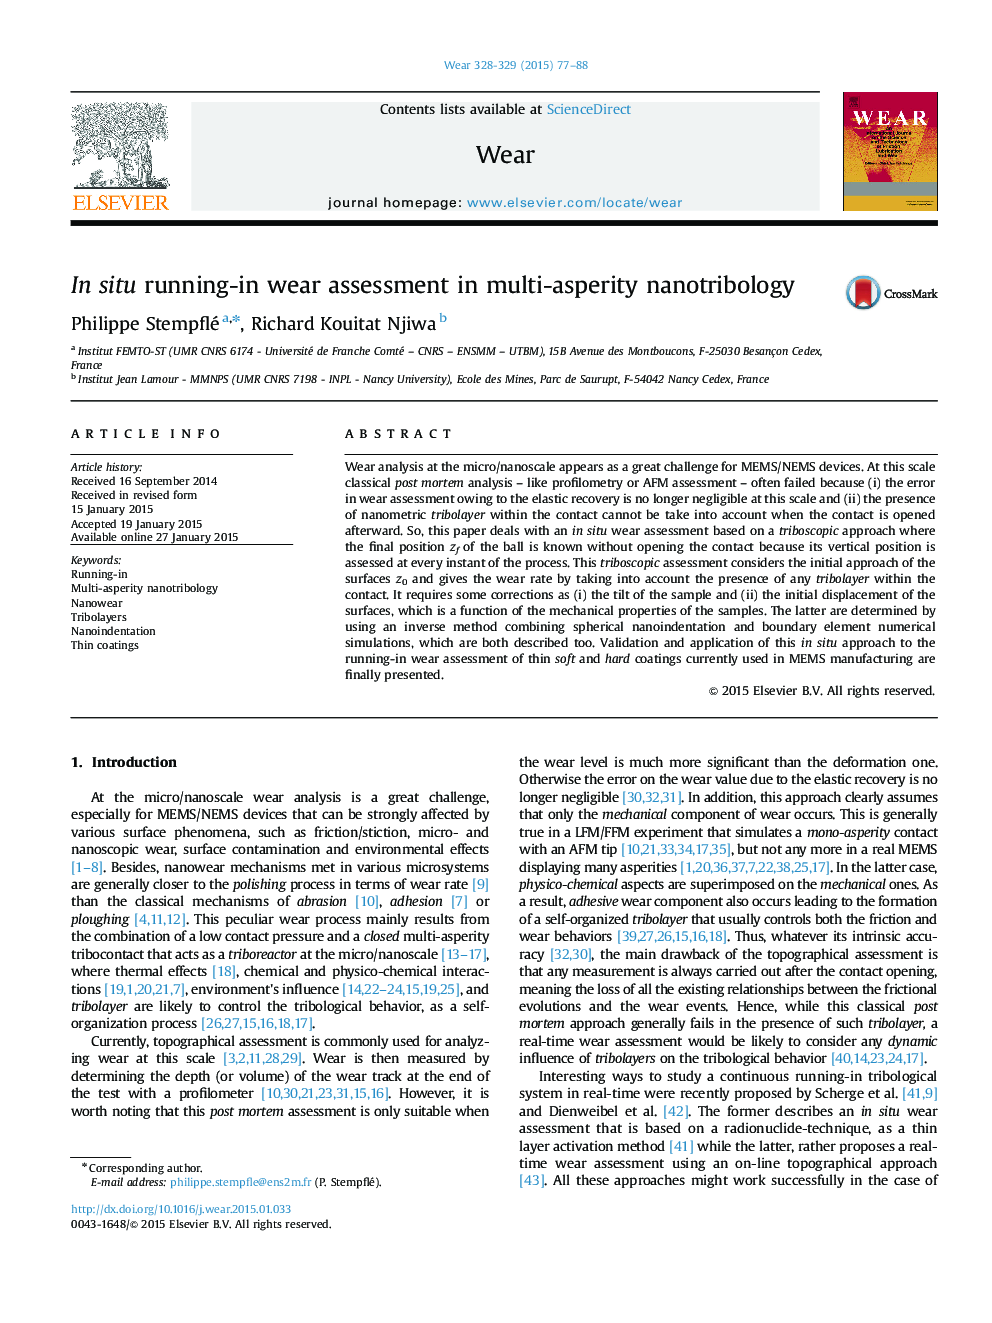 In situ running-in wear assessment in multi-asperity nanotribology